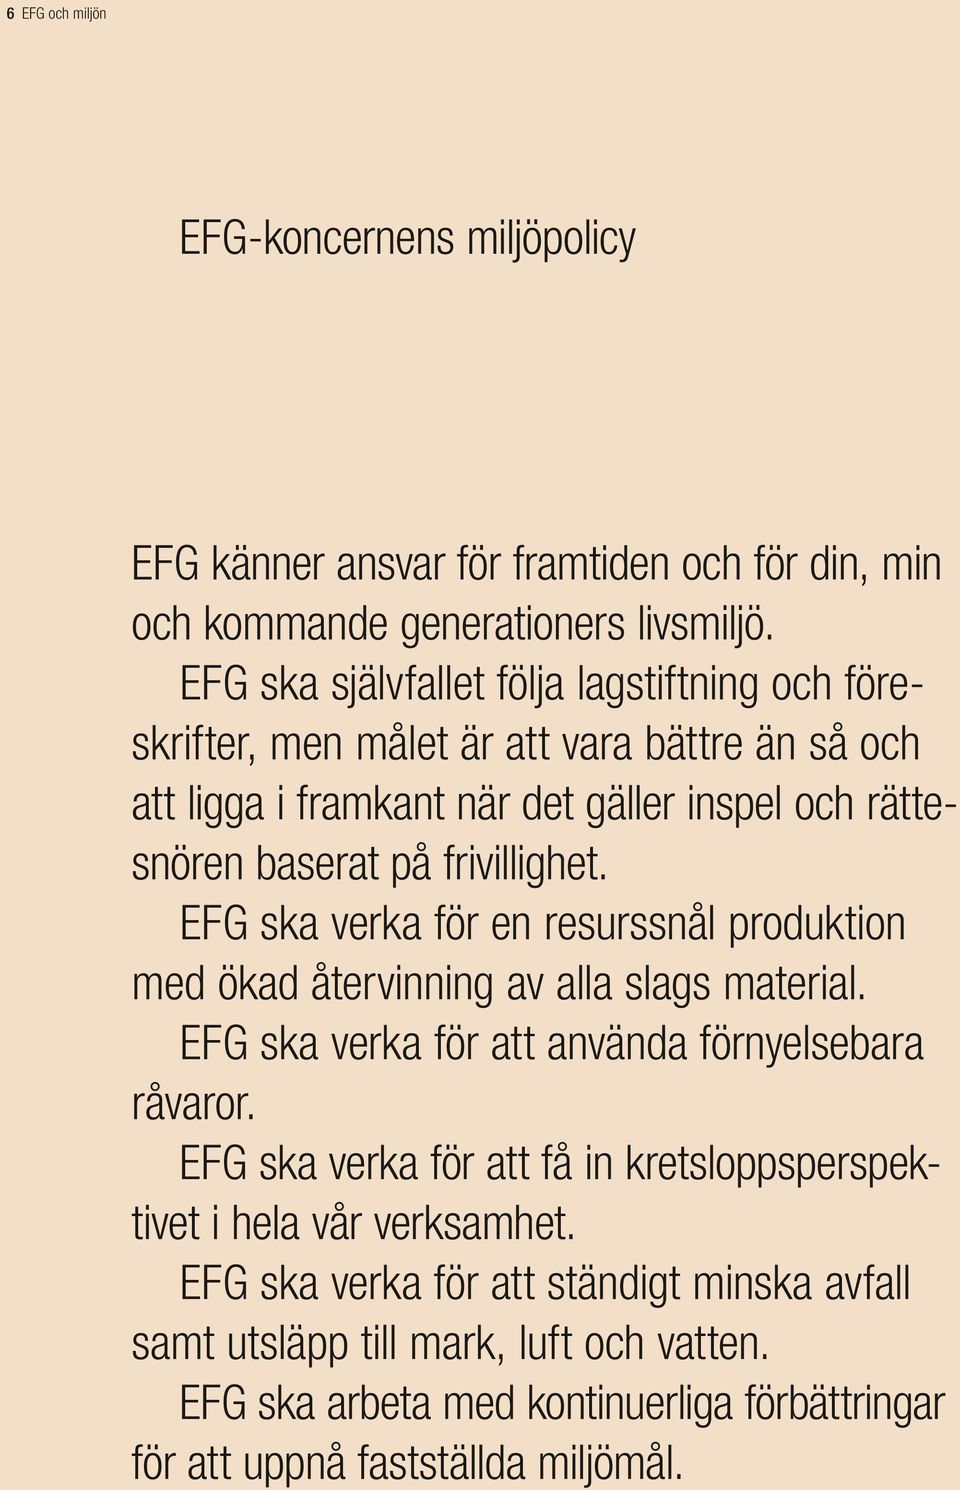 frivillighet. EFG ska verka för en resurssnål produktion med ökad återvinning av alla slags material. EFG ska verka för att använda förnyelsebara råvaror.